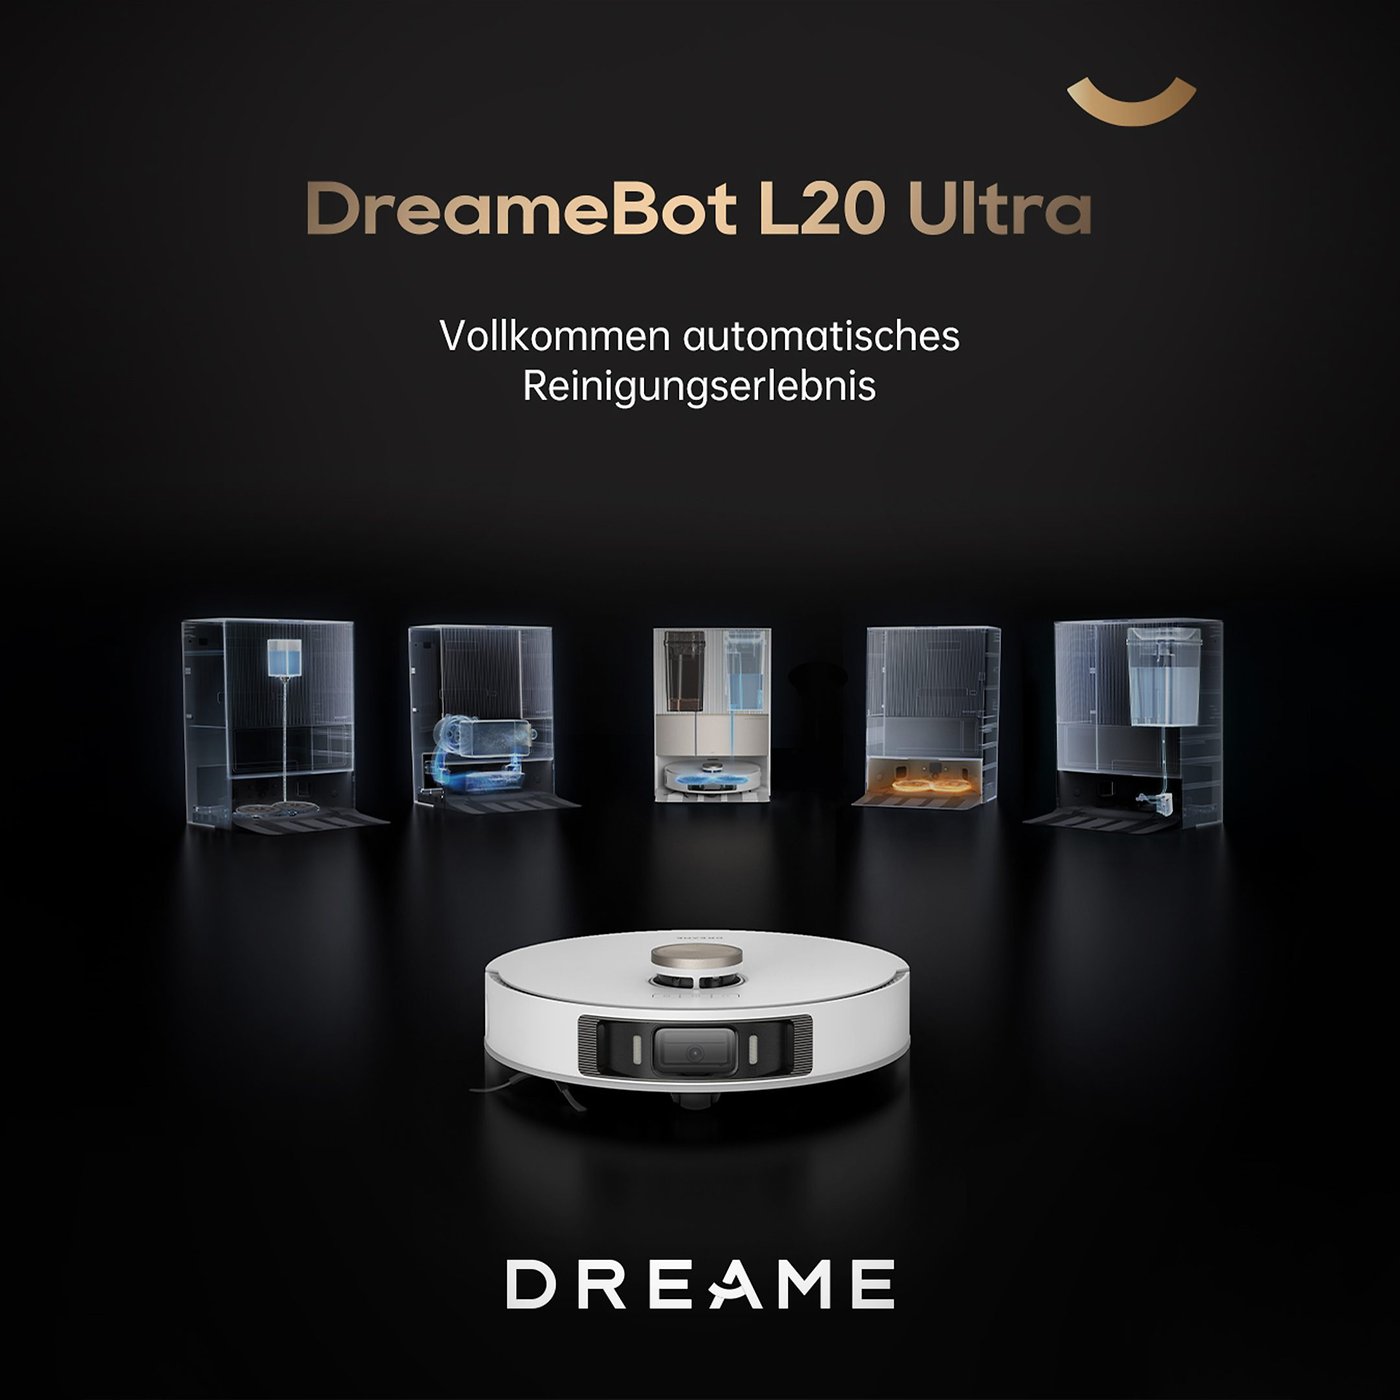 Robot Aspirateur Laveur DREAME dreamebot L20 Ultra Dreame